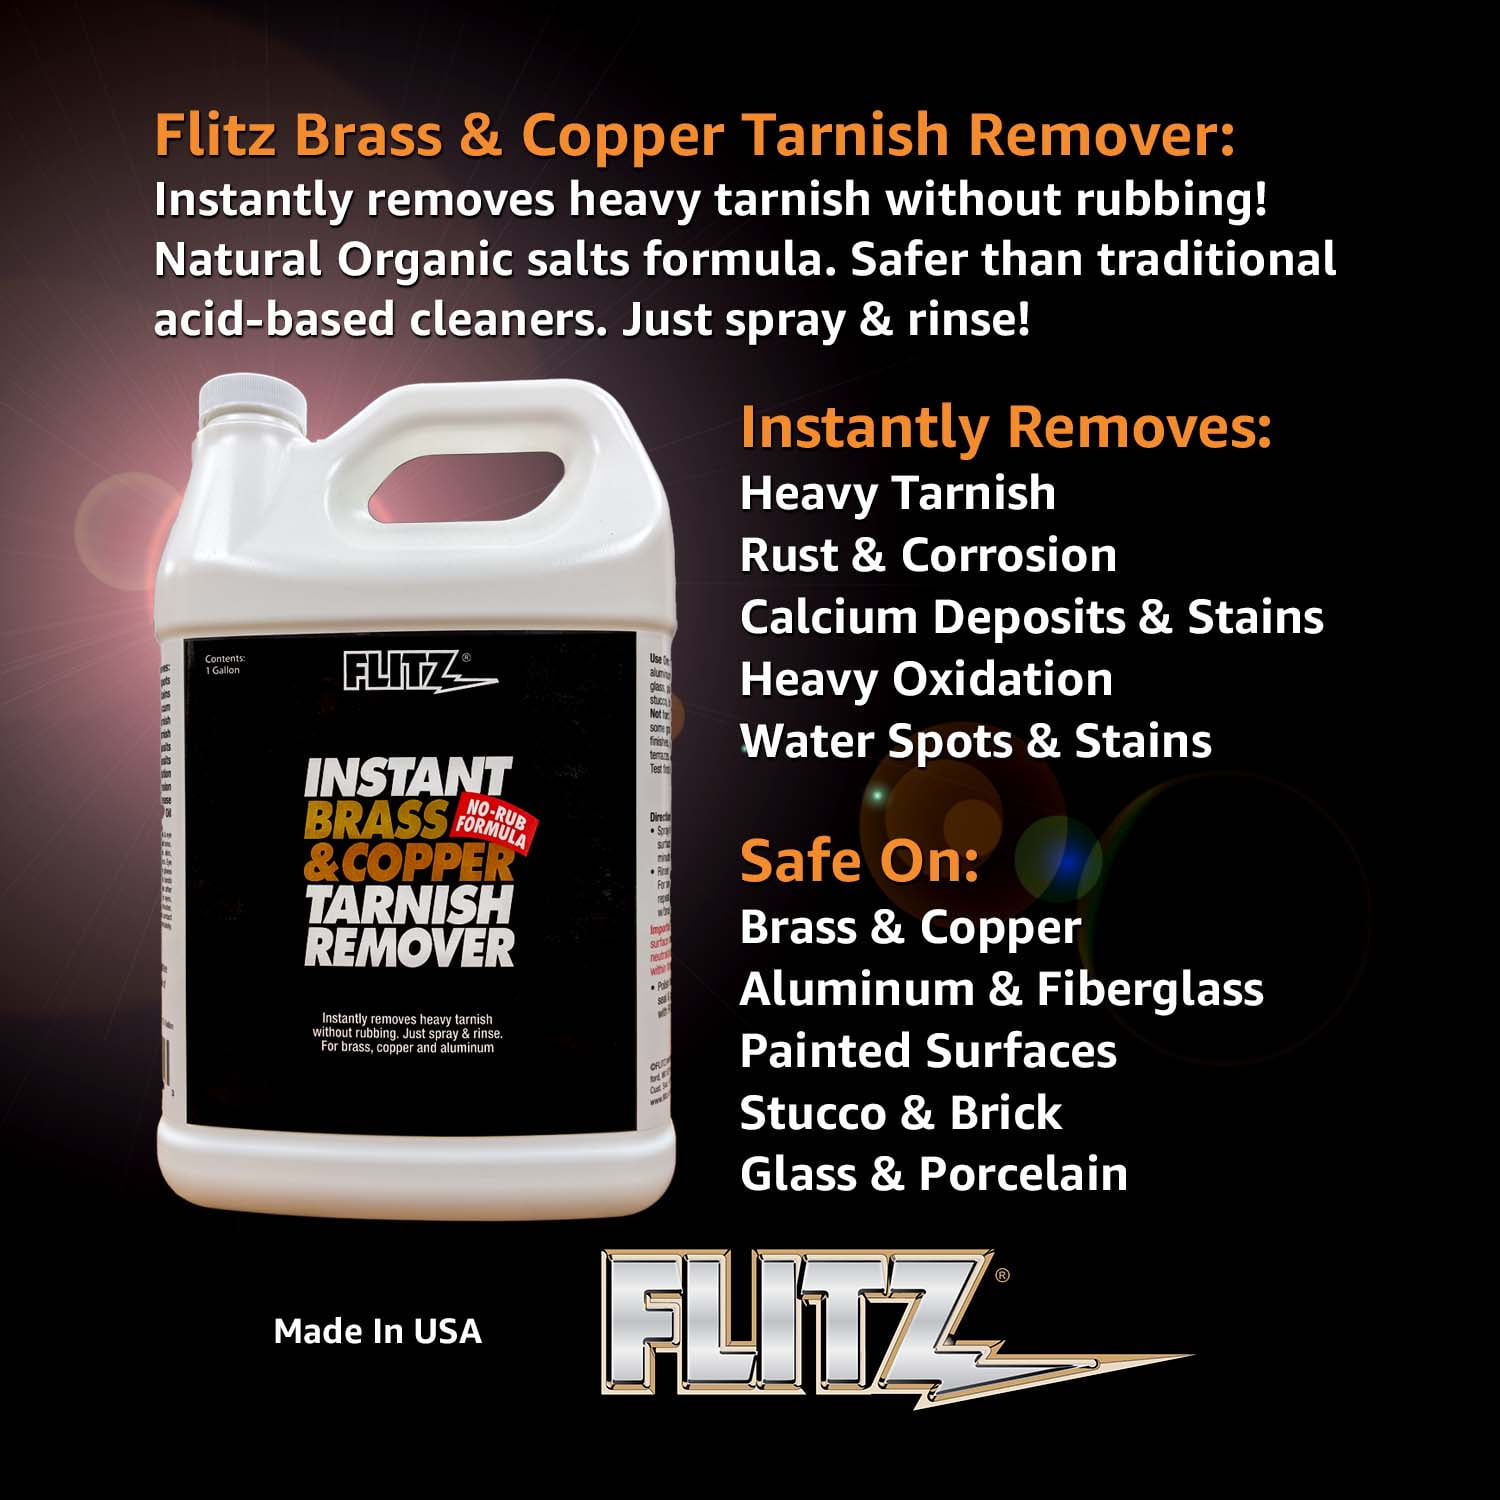 Flitz Brass & Copper Tarnish Remover น้ำยาขจัดคราบทองเหลืองและทองแดง Flitz  สูตรออร์แกนิกอันทรงพลังที่ขจัดสนิม คราบสกปรก